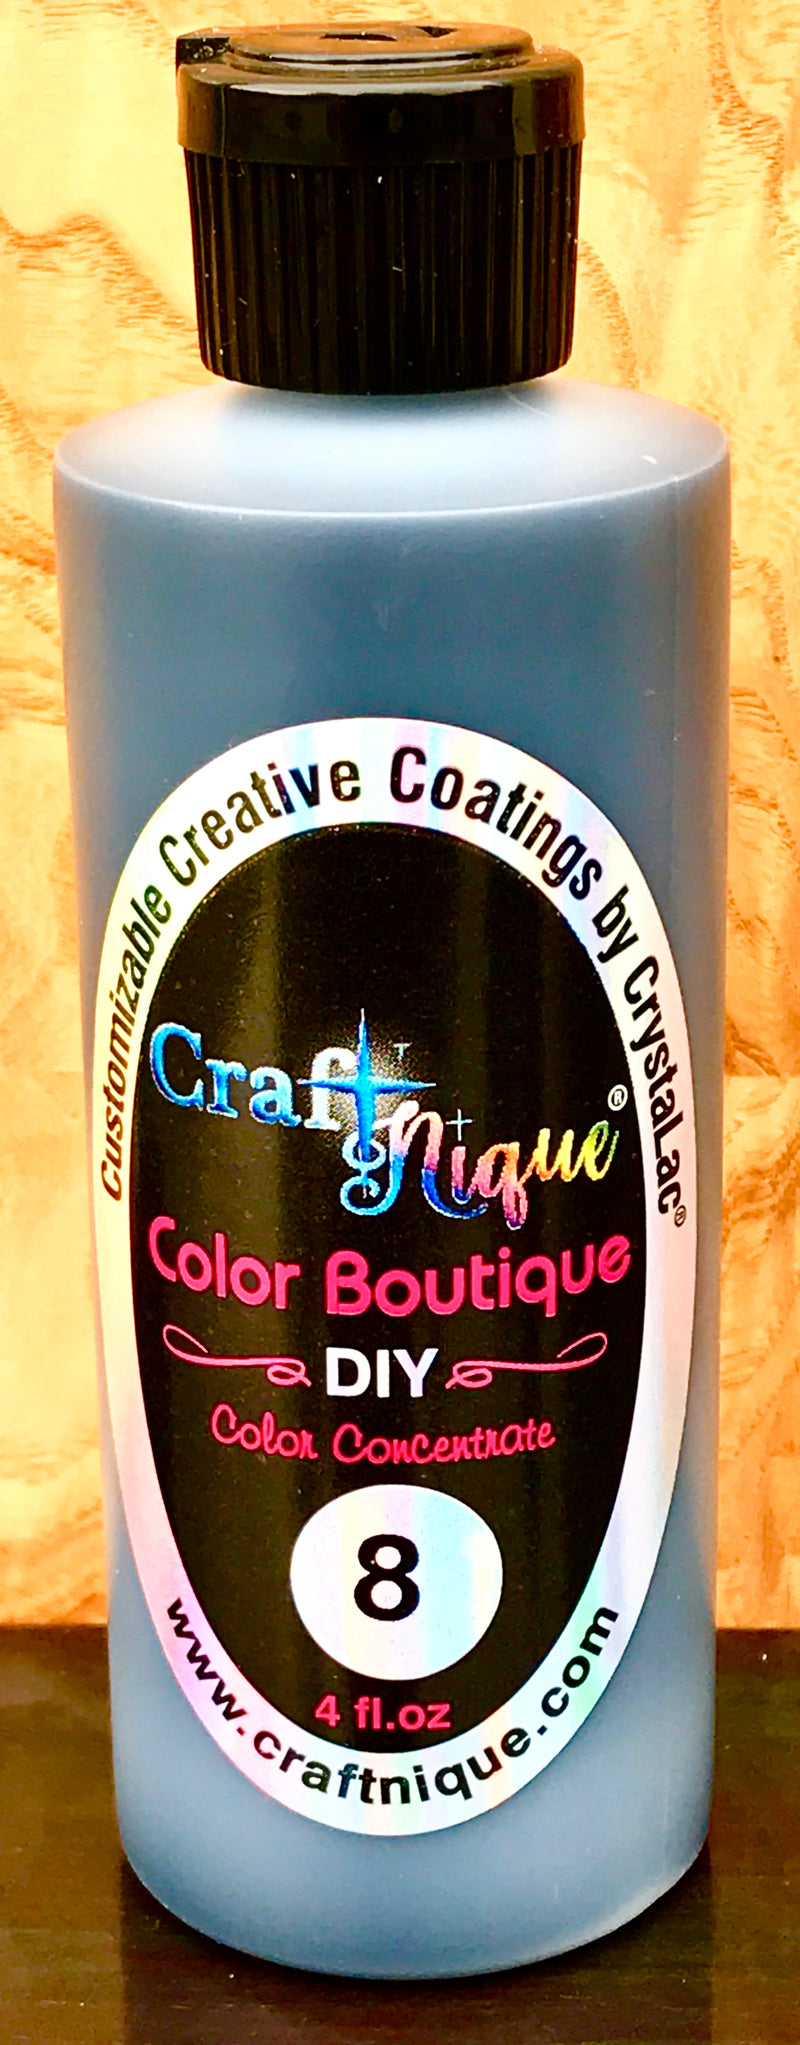 CraftNique Color Boutique DIY Concentrated Pigments